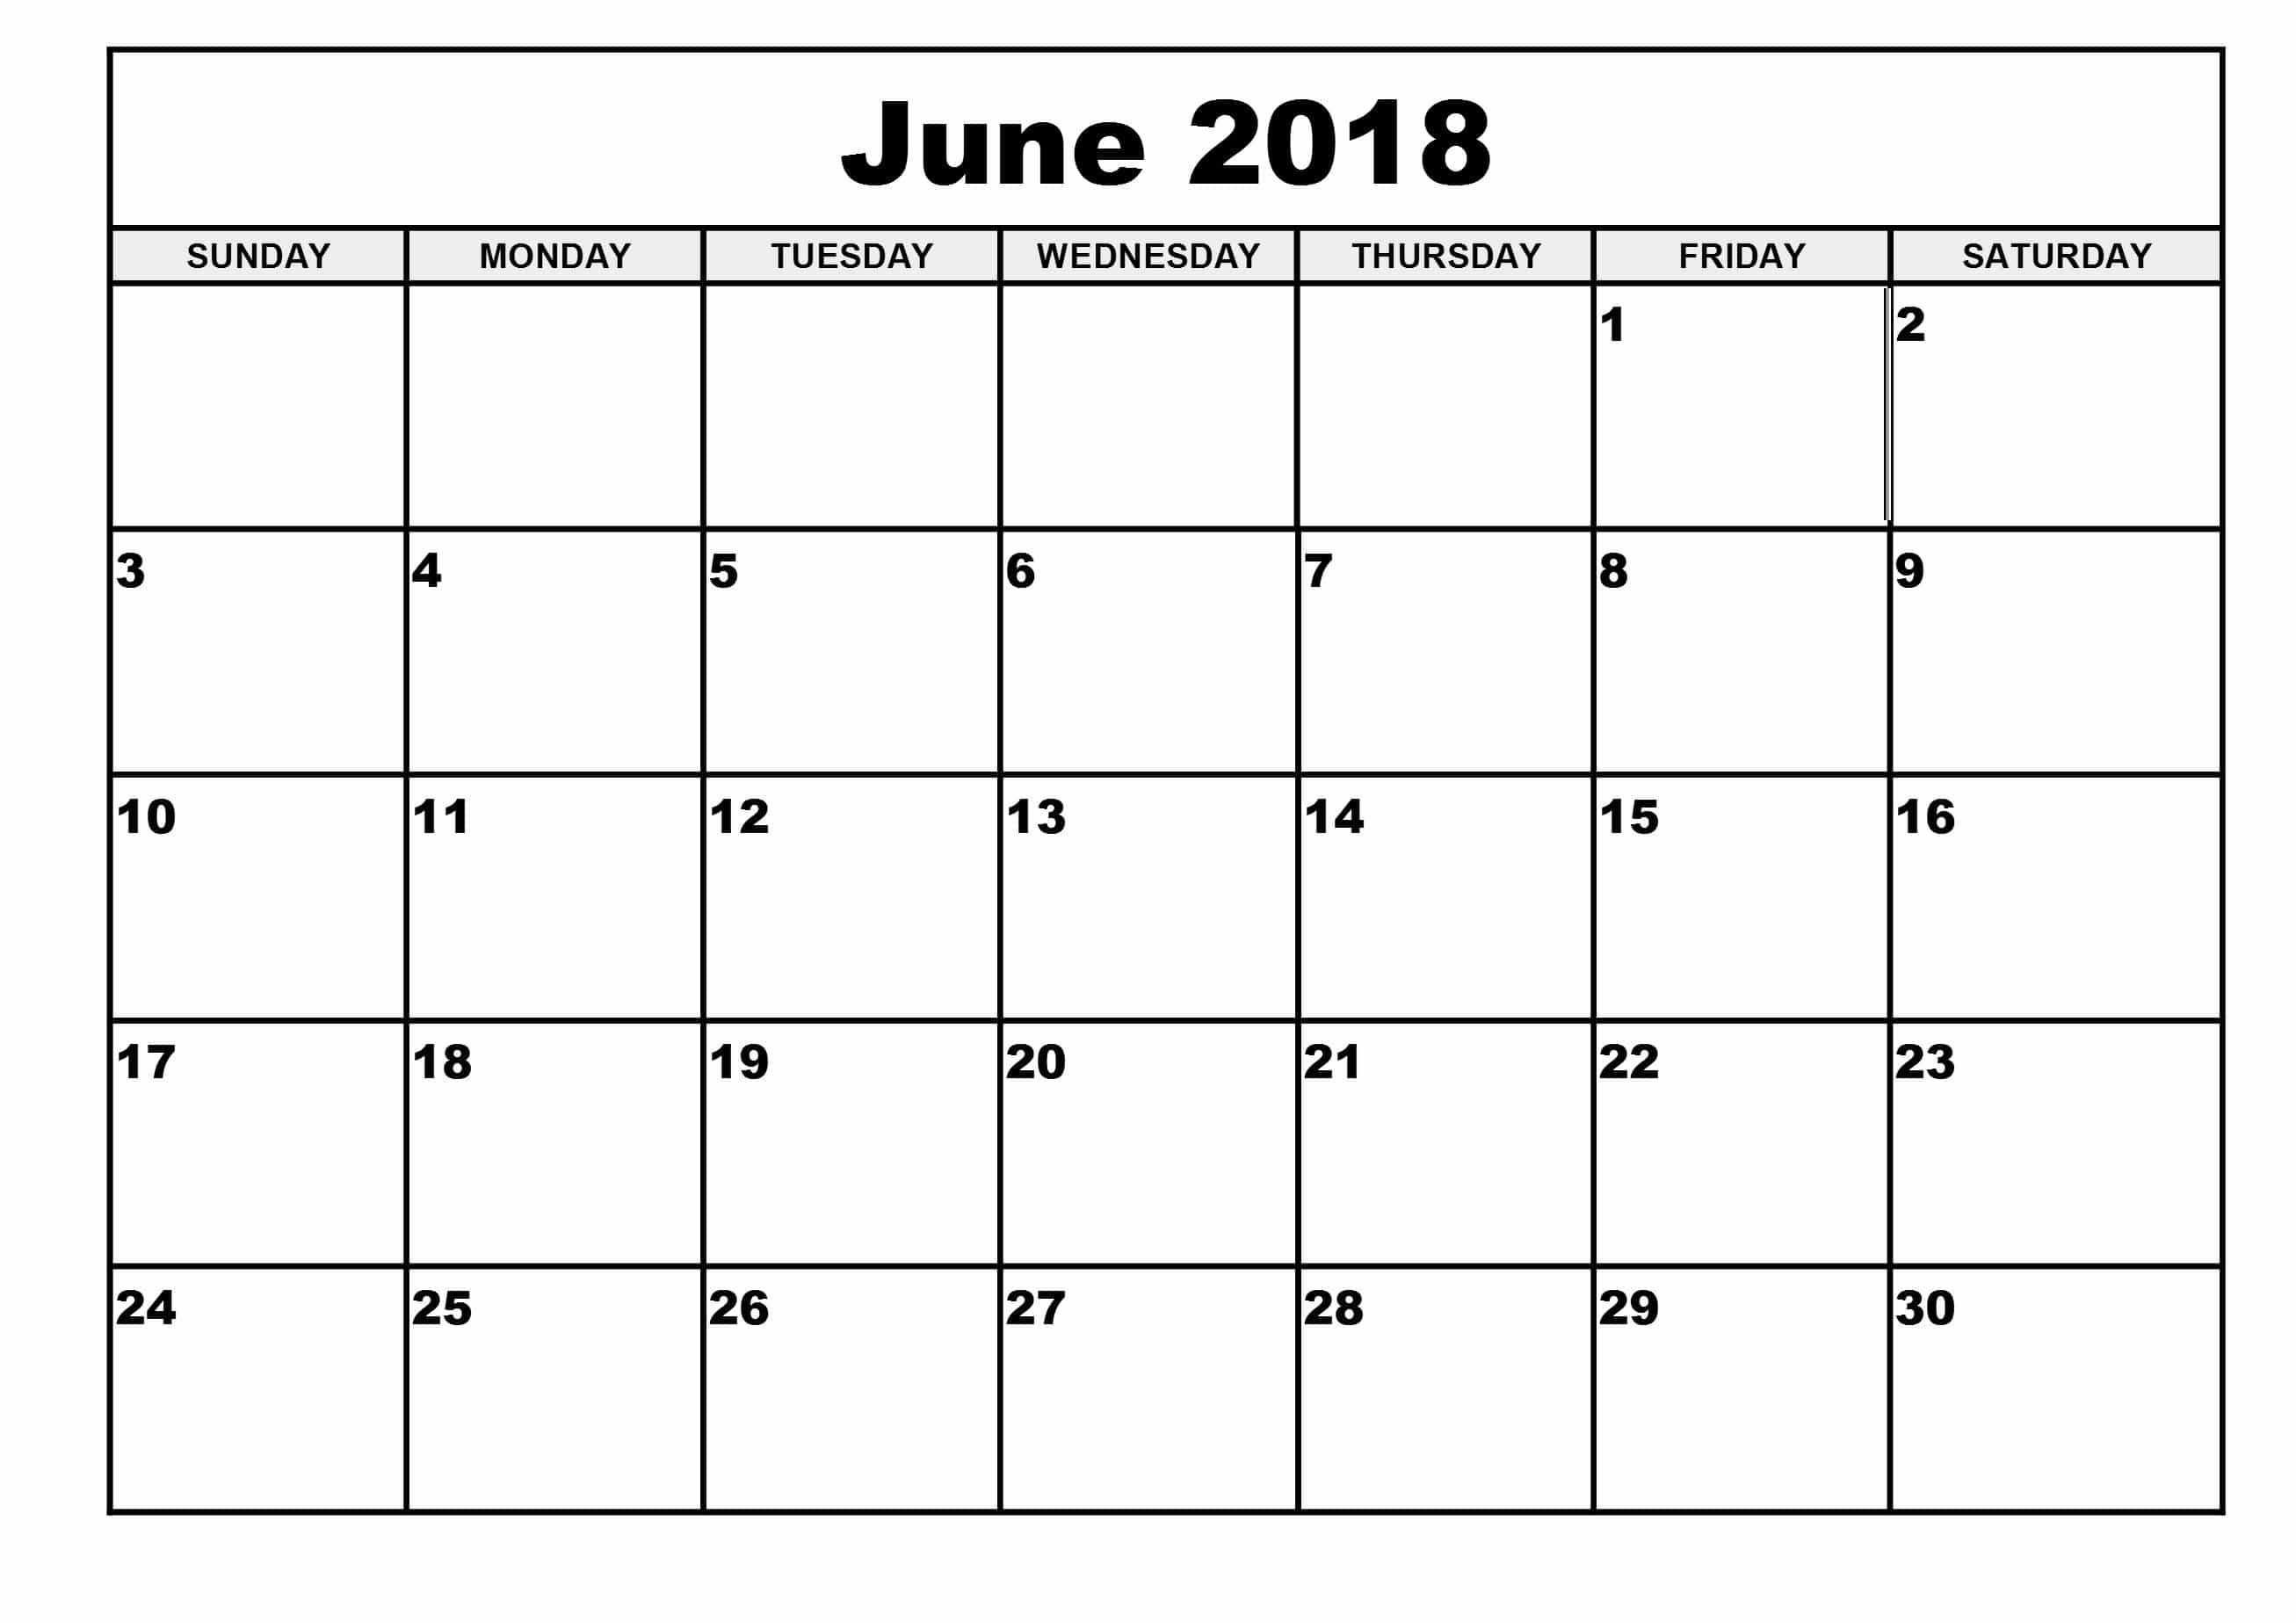 June Calendar Template from oppidanlibrary.com